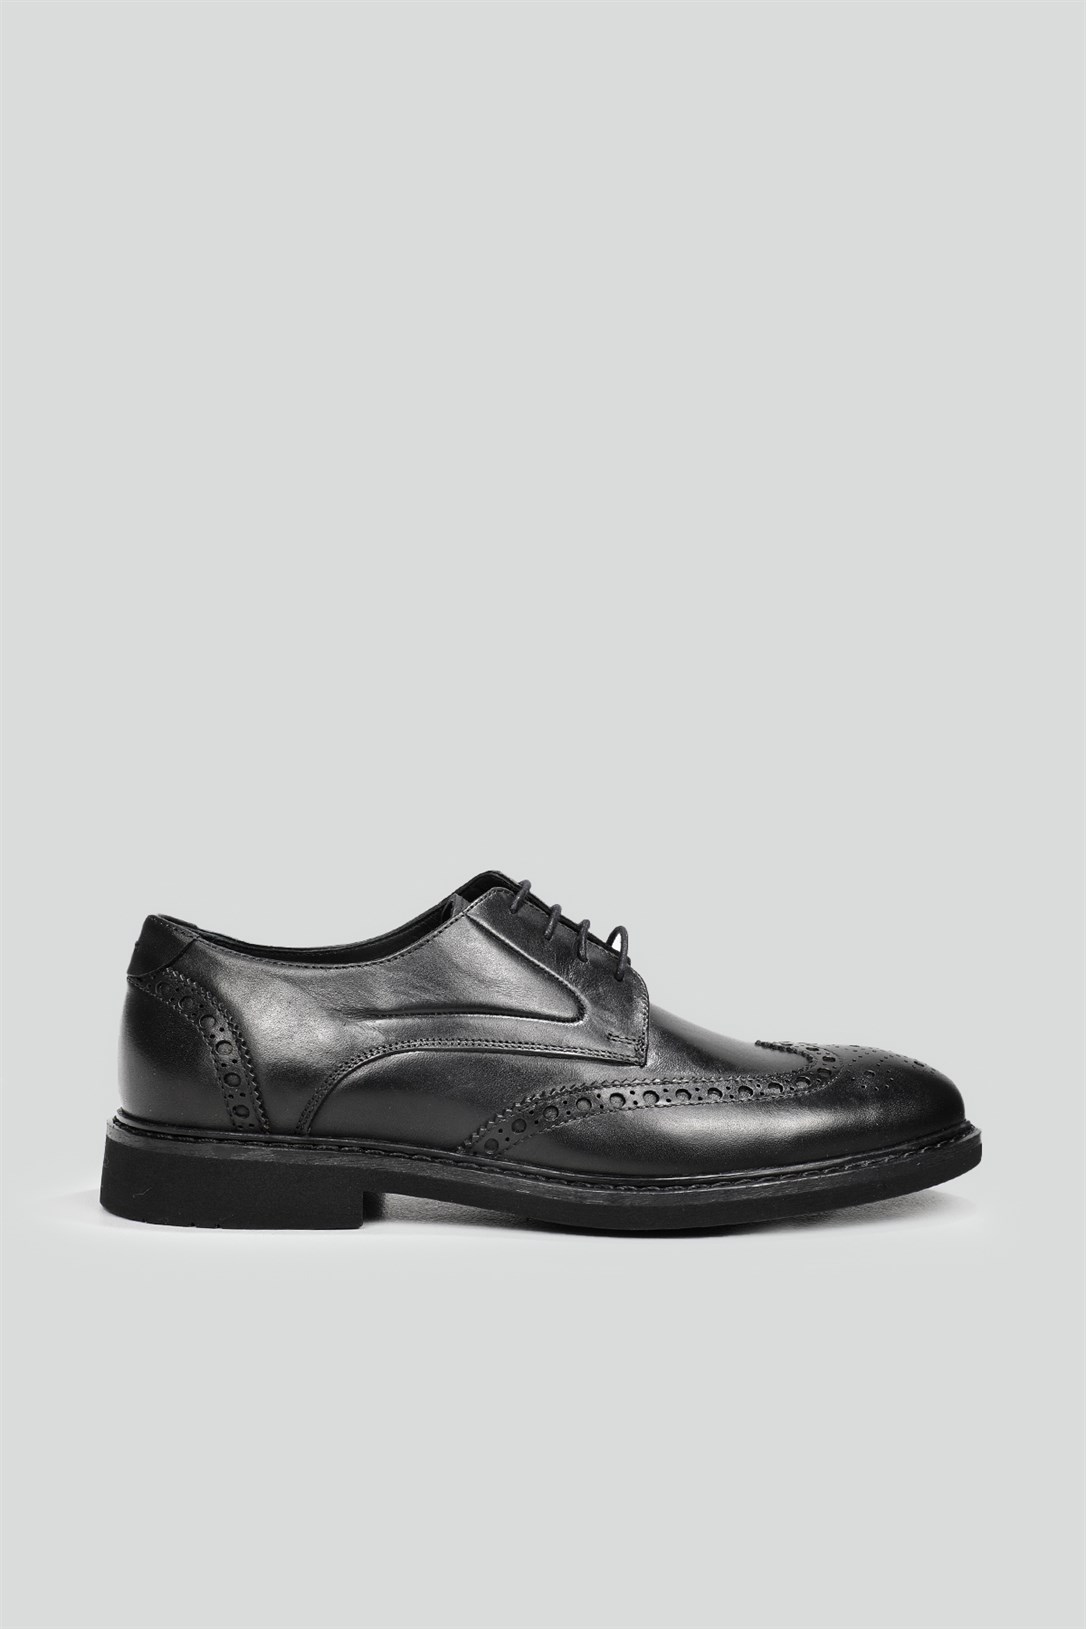 Greyder Deri Klasik Siyah Antik Erkek Ayakkabı 67827 | Ayakkabı City